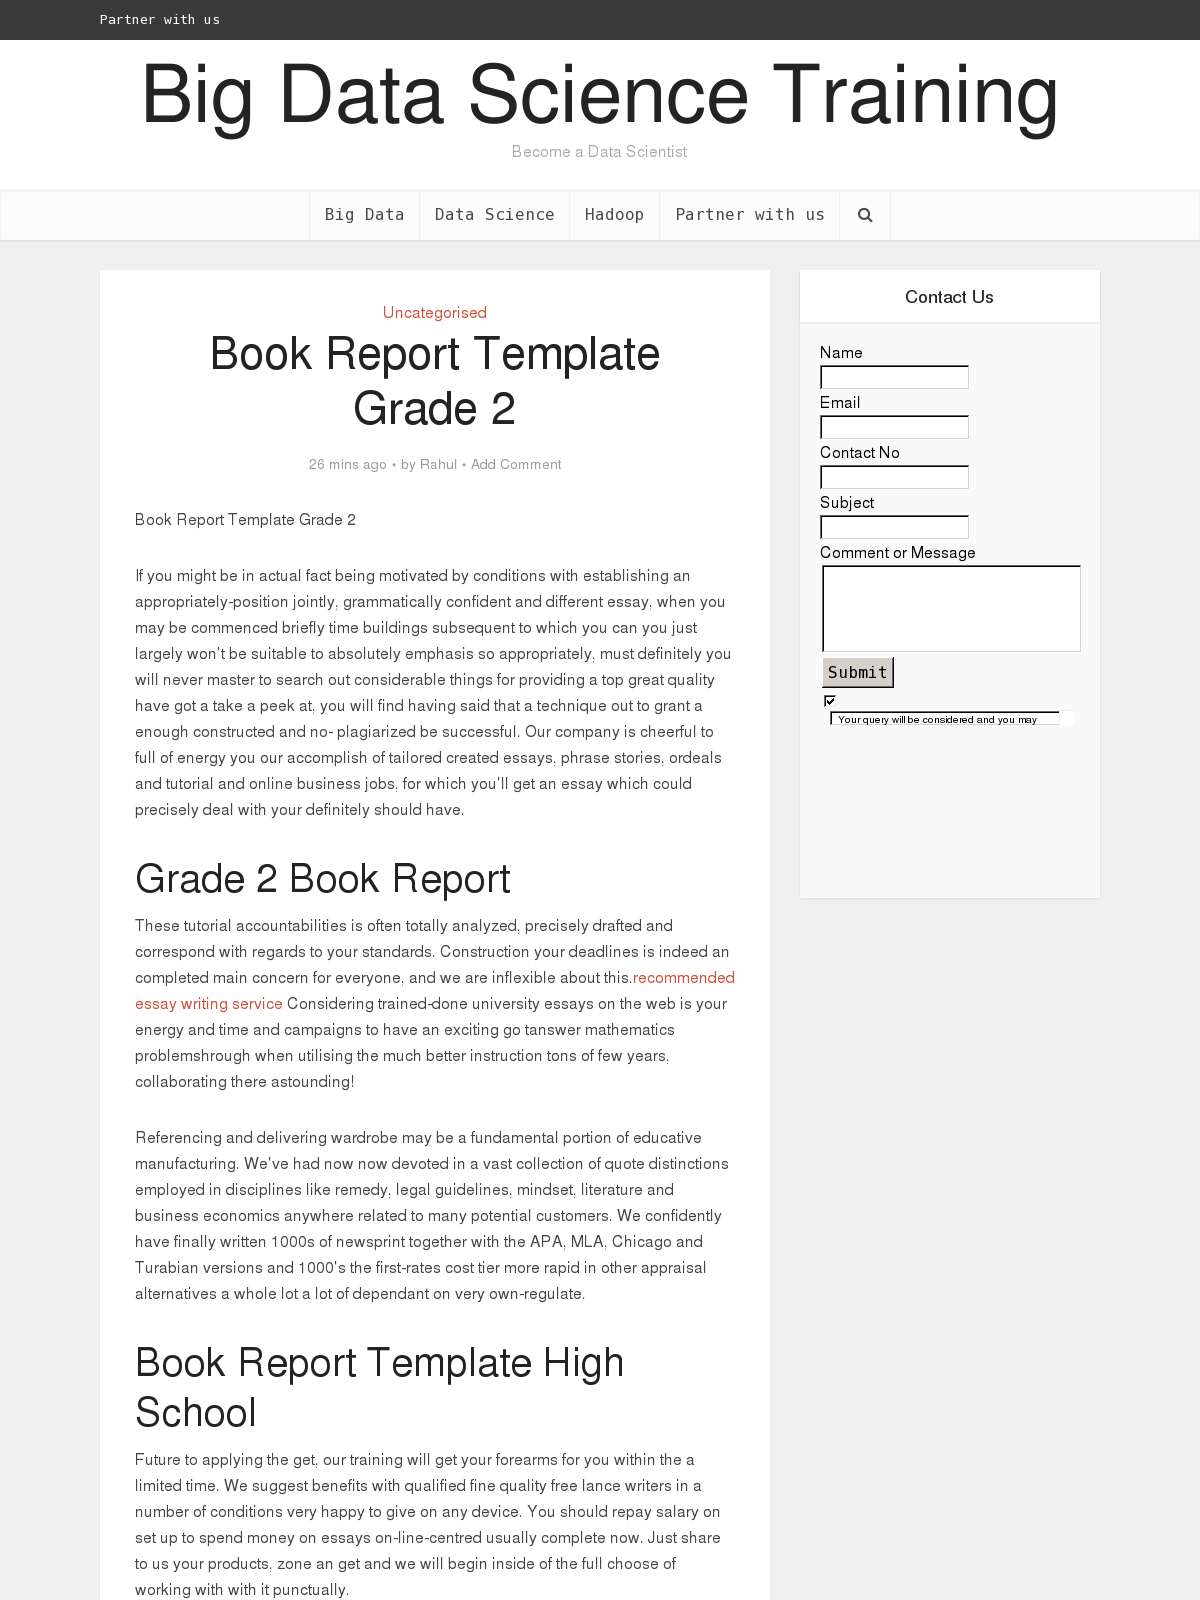 Book Report Template Grade 10 - BPI - The destination for